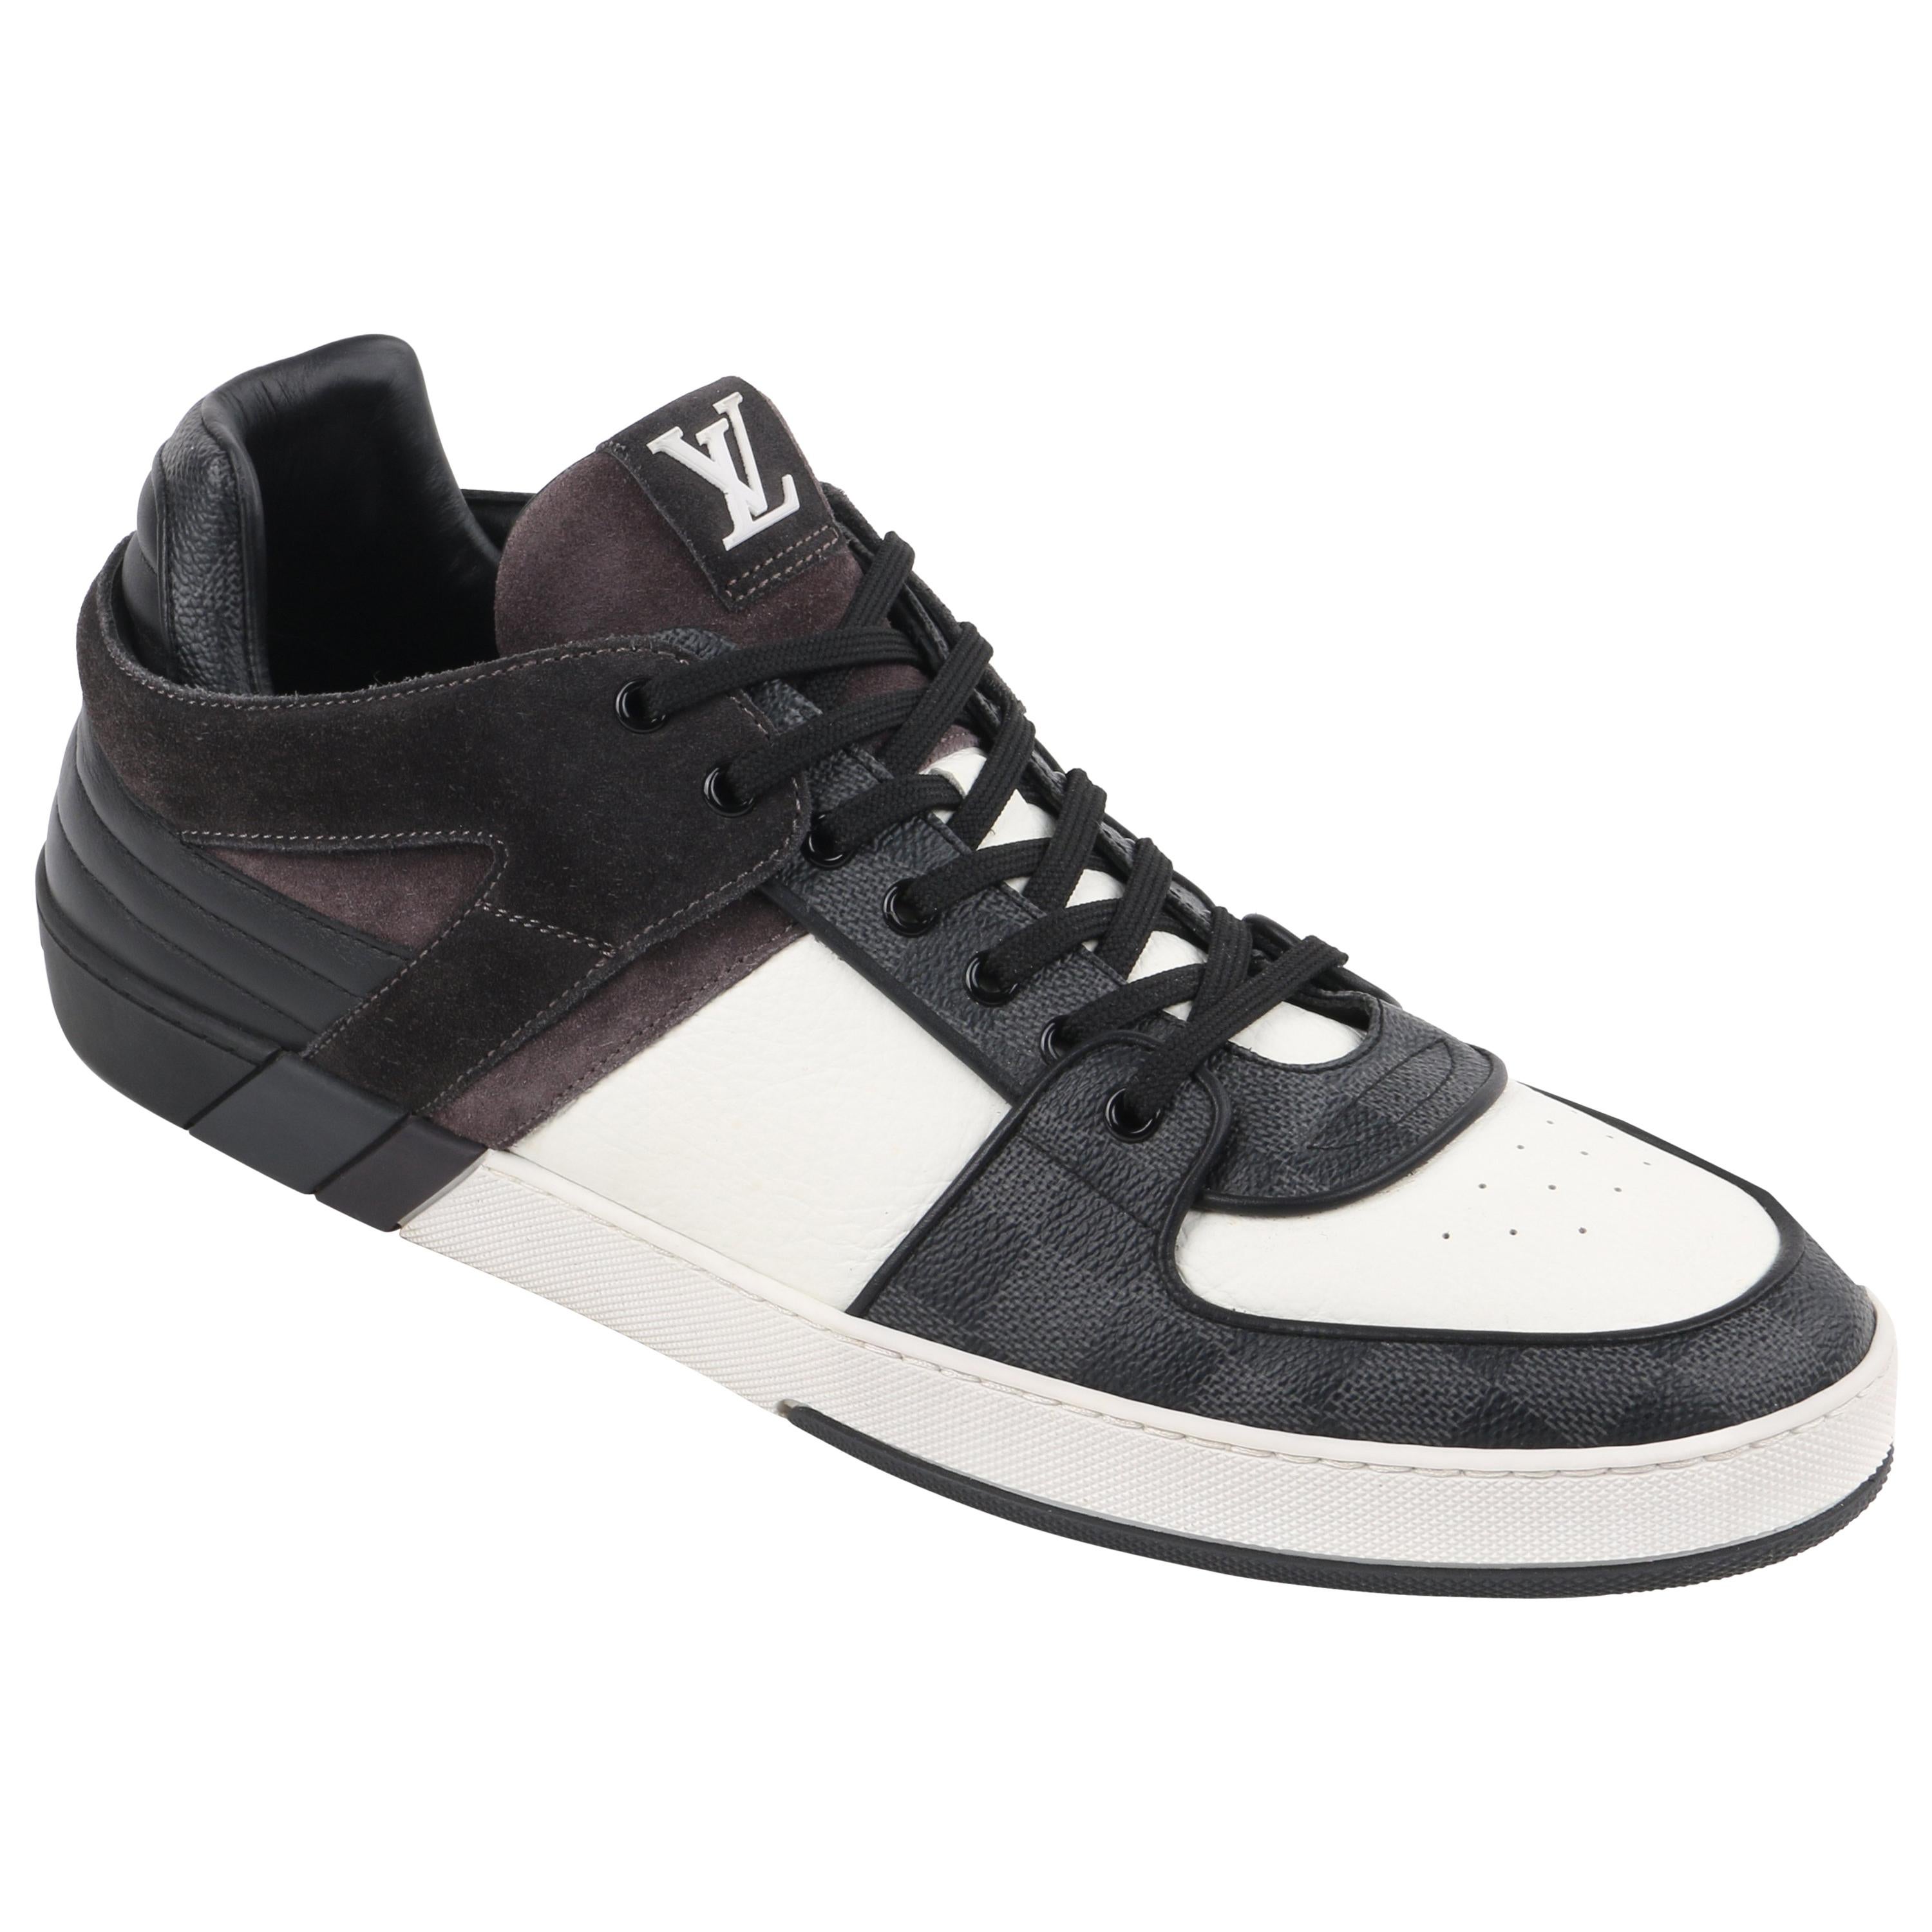 LOUIS VUITTON S/S 2012 "Ace" Graphite Damier Canvas & Leather Low Top Sneaker